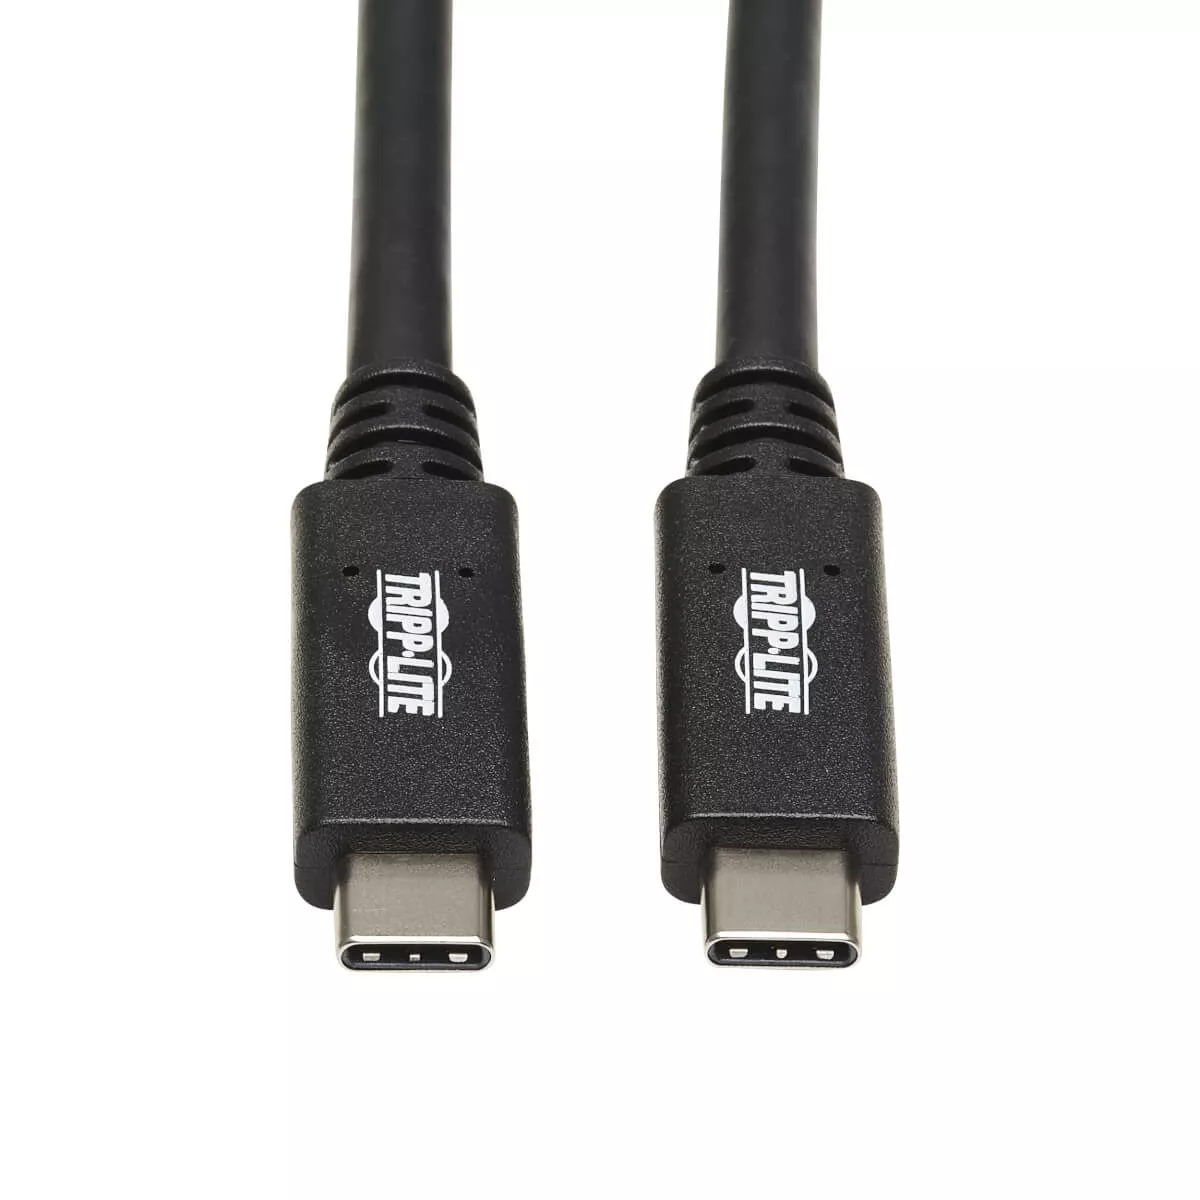 Revendeur officiel Câble USB EATON TRIPPLITE USB-C Cable M/M - USB 3.1 Gen 2 10